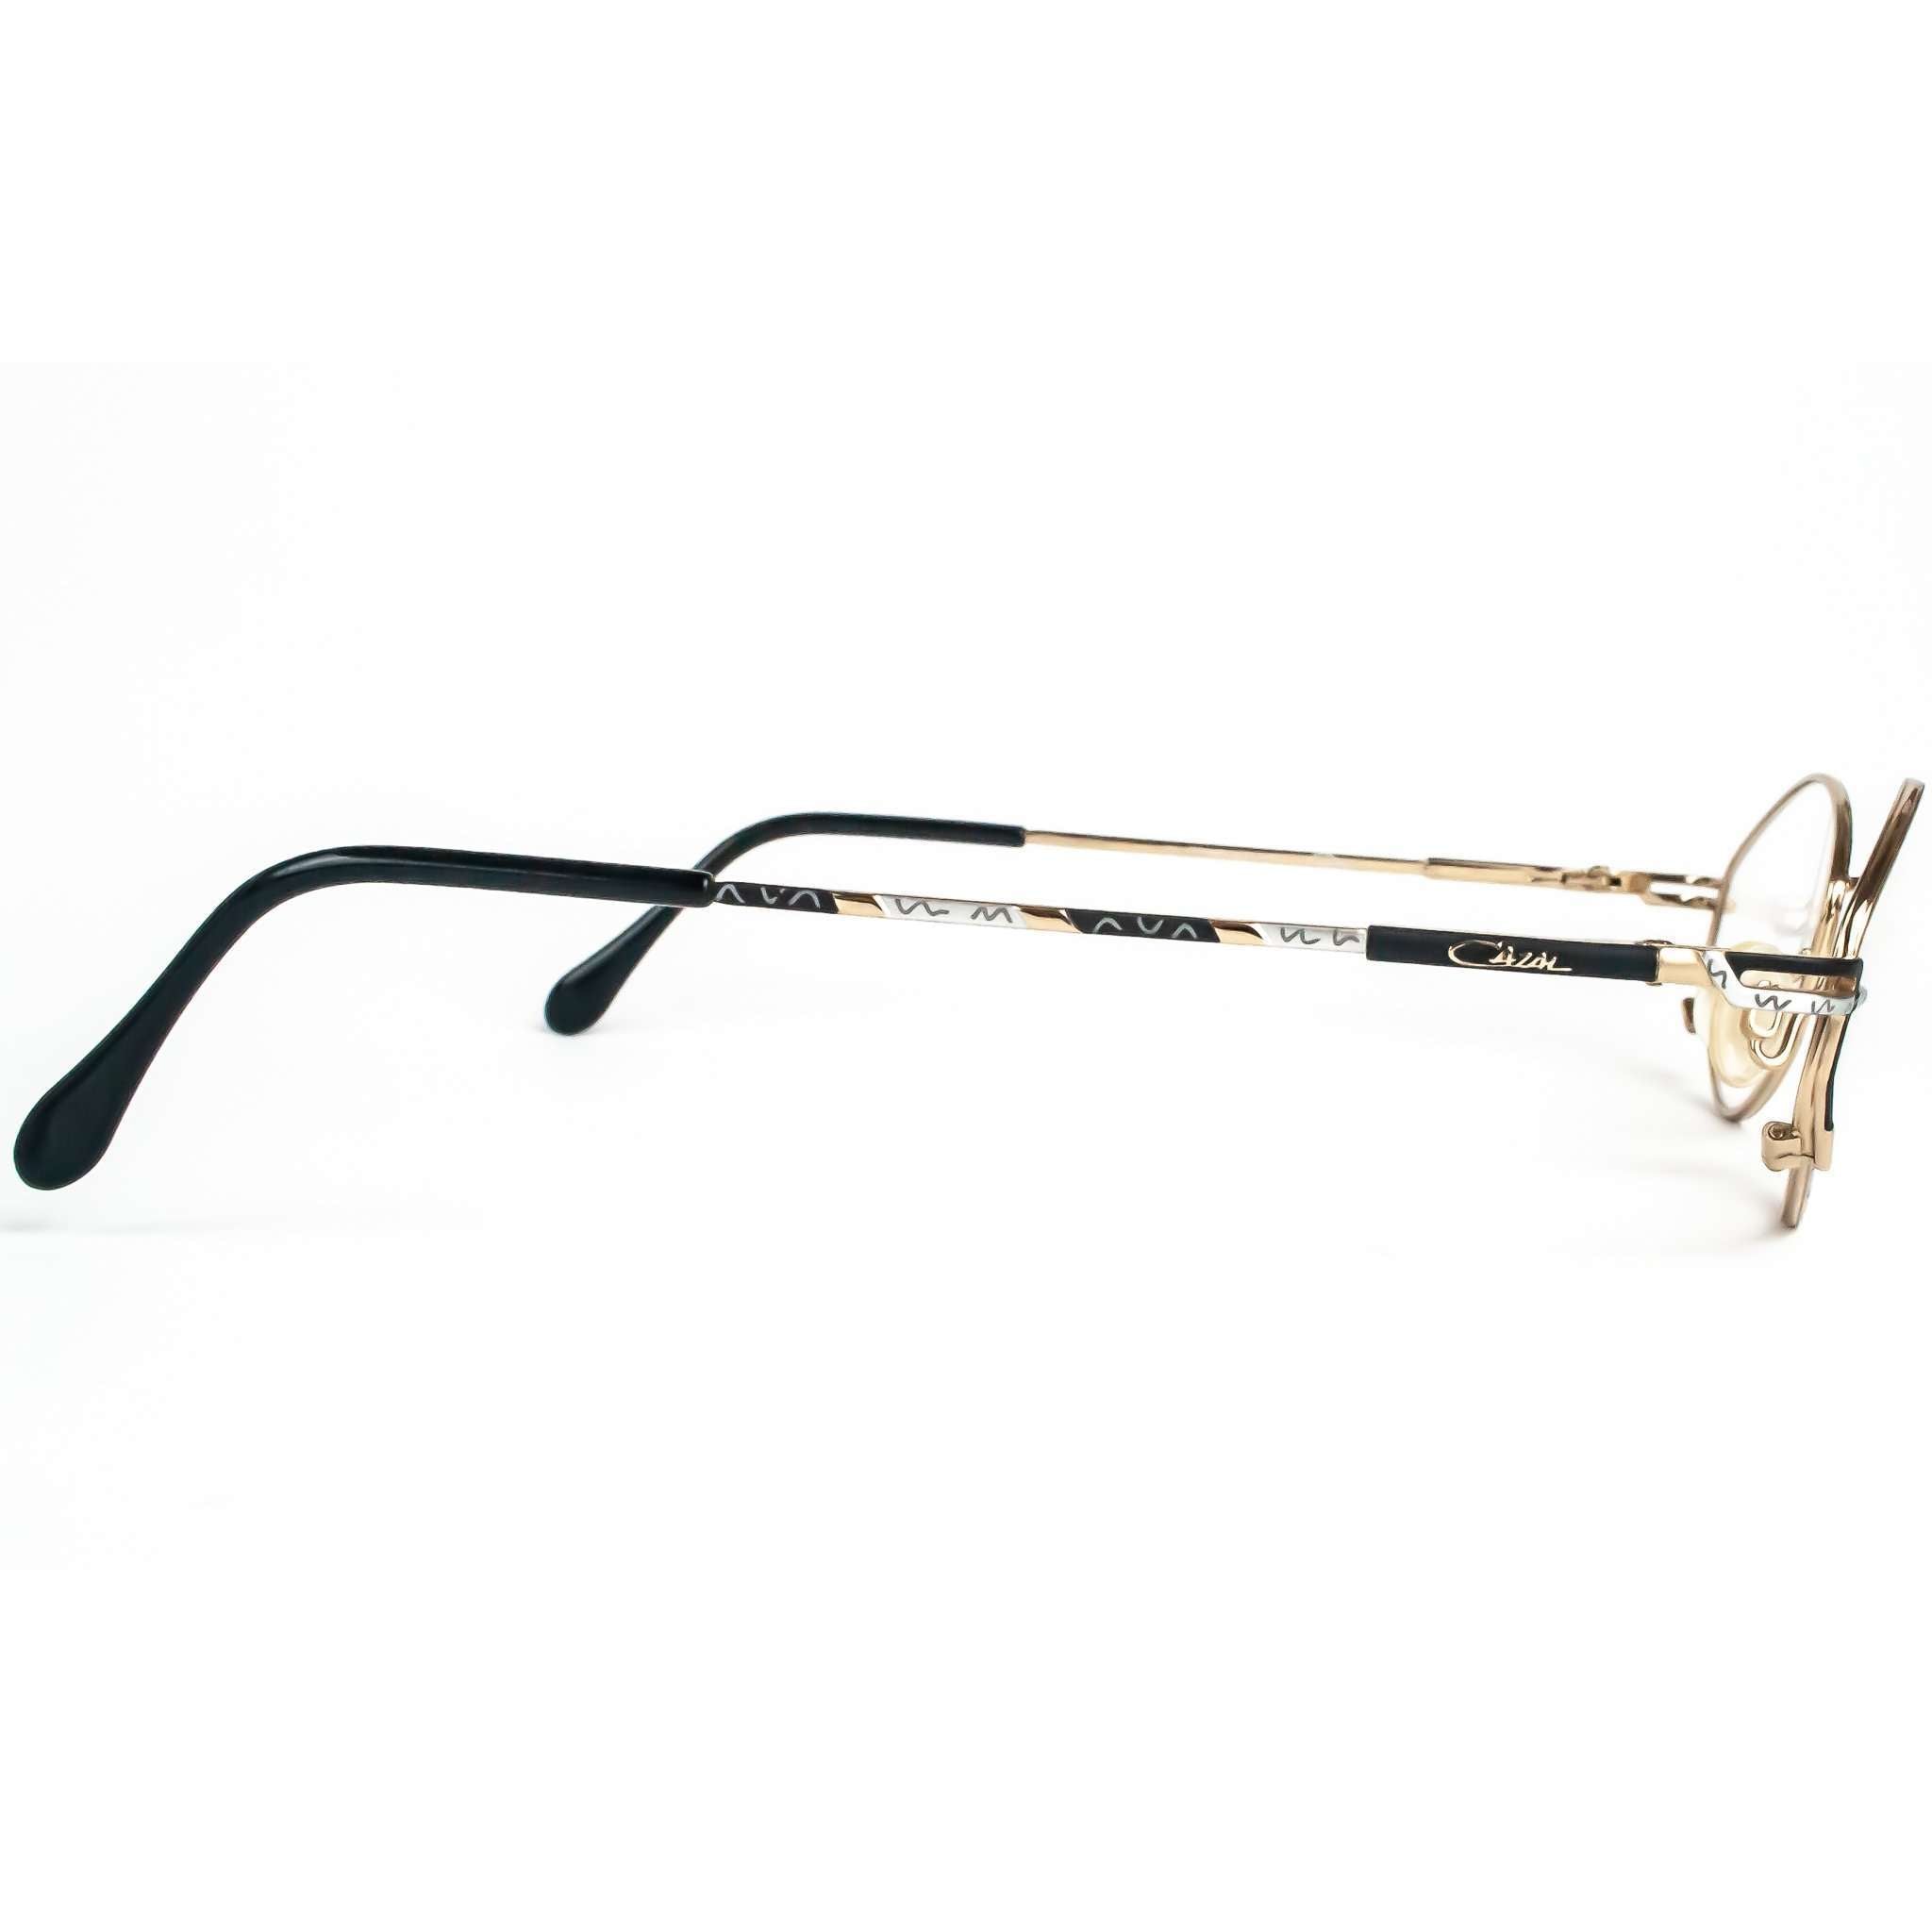 Cazal Model 415 Gold Metal Retro Glasses